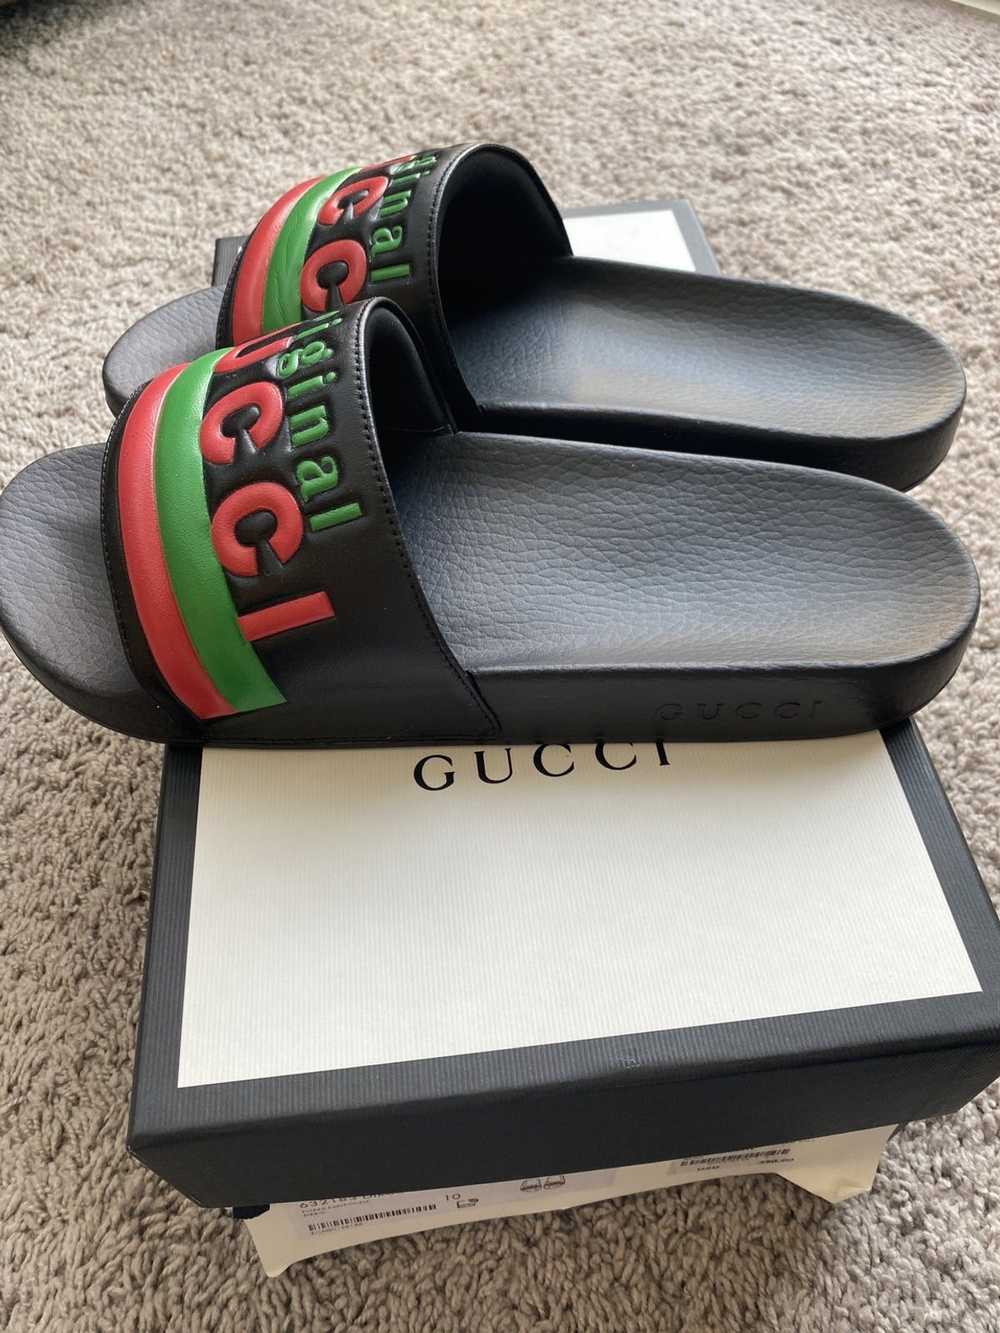 Gucci Gucci slides - image 7